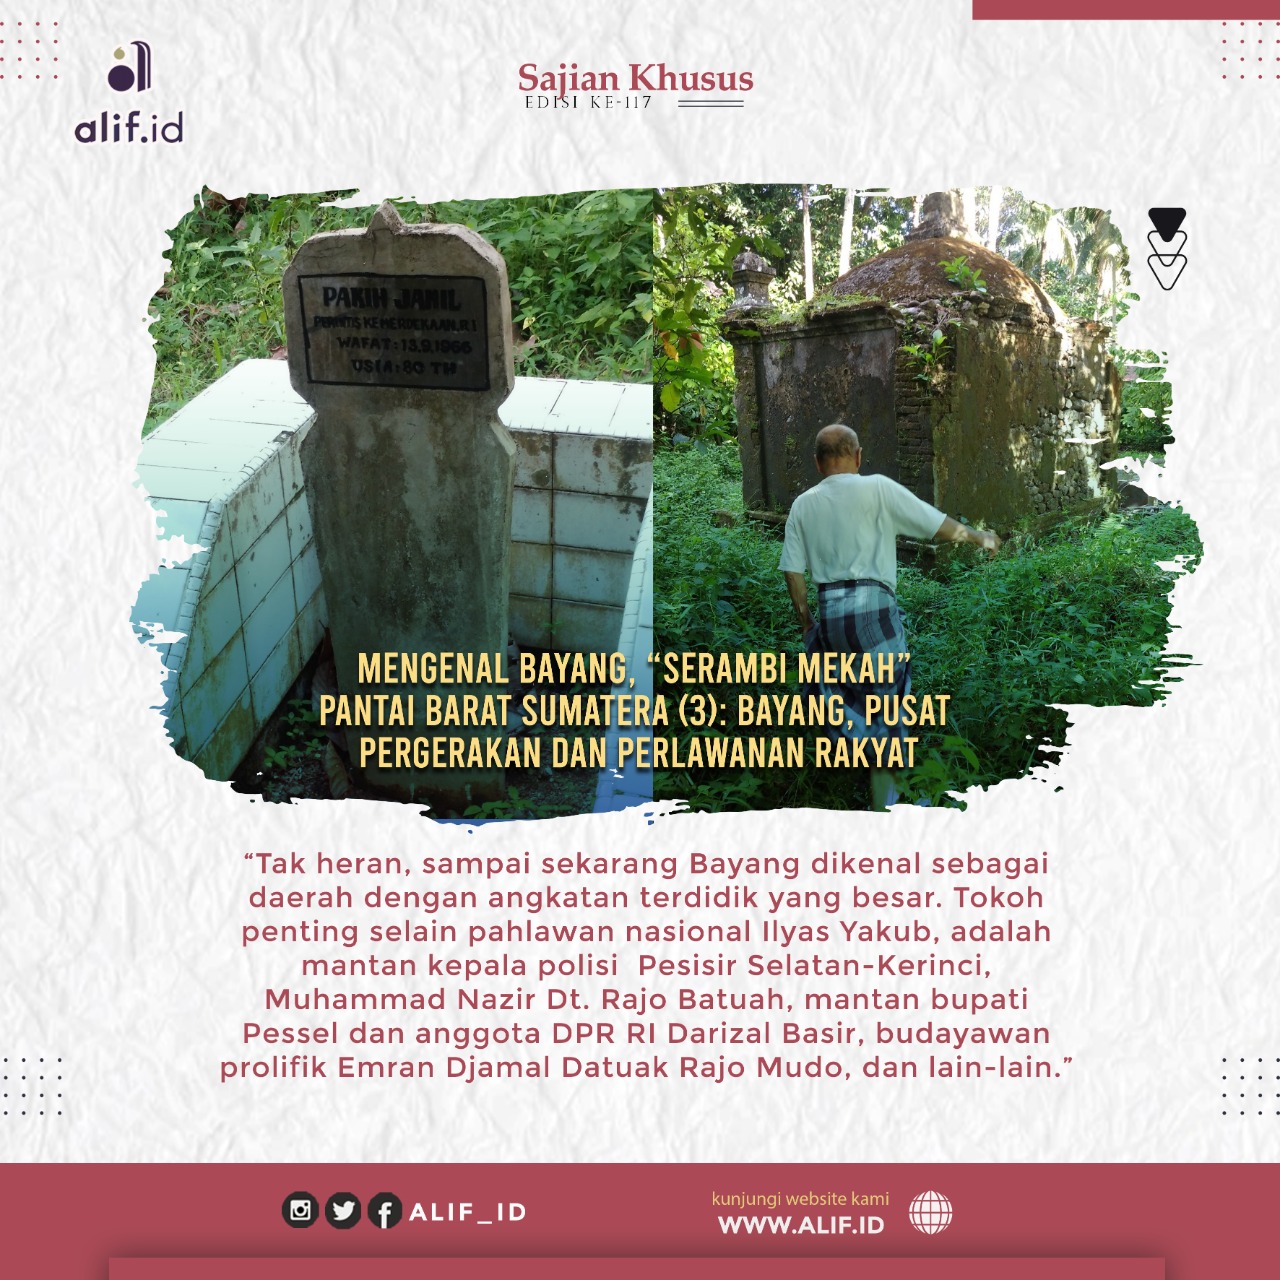 Mengenal Bayang, “Serambi Mekah” Pantai Barat Sumatera (3): Bayang, Pusat Pergerakan dan Perlawanan Rakyat